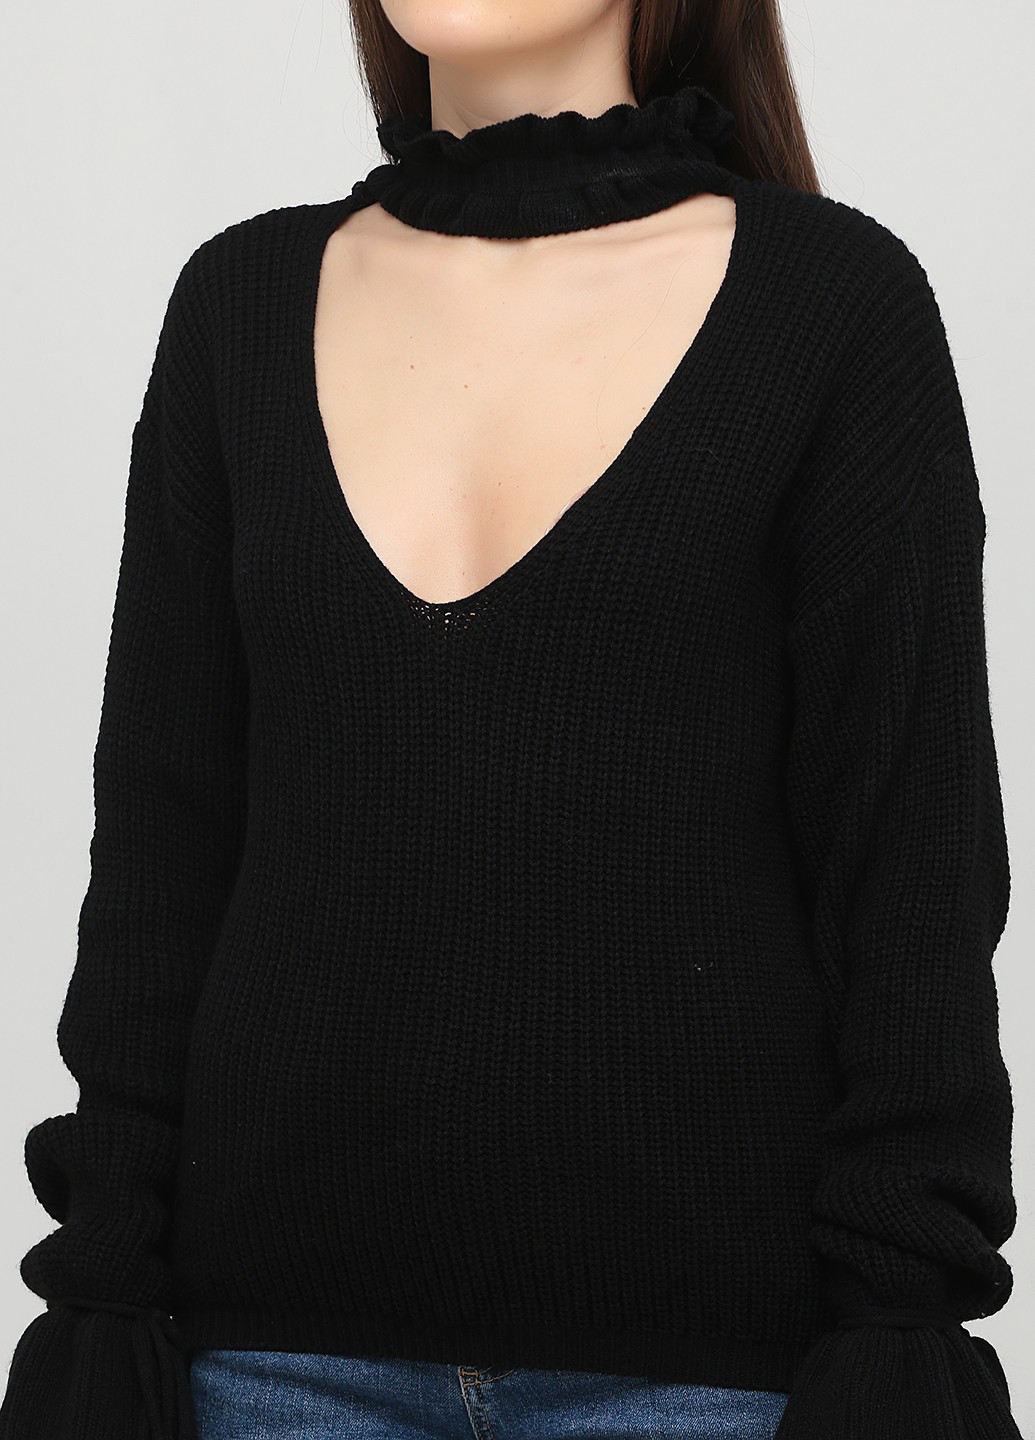 Черный демисезонный пуловер пуловер PrettyLittleThing